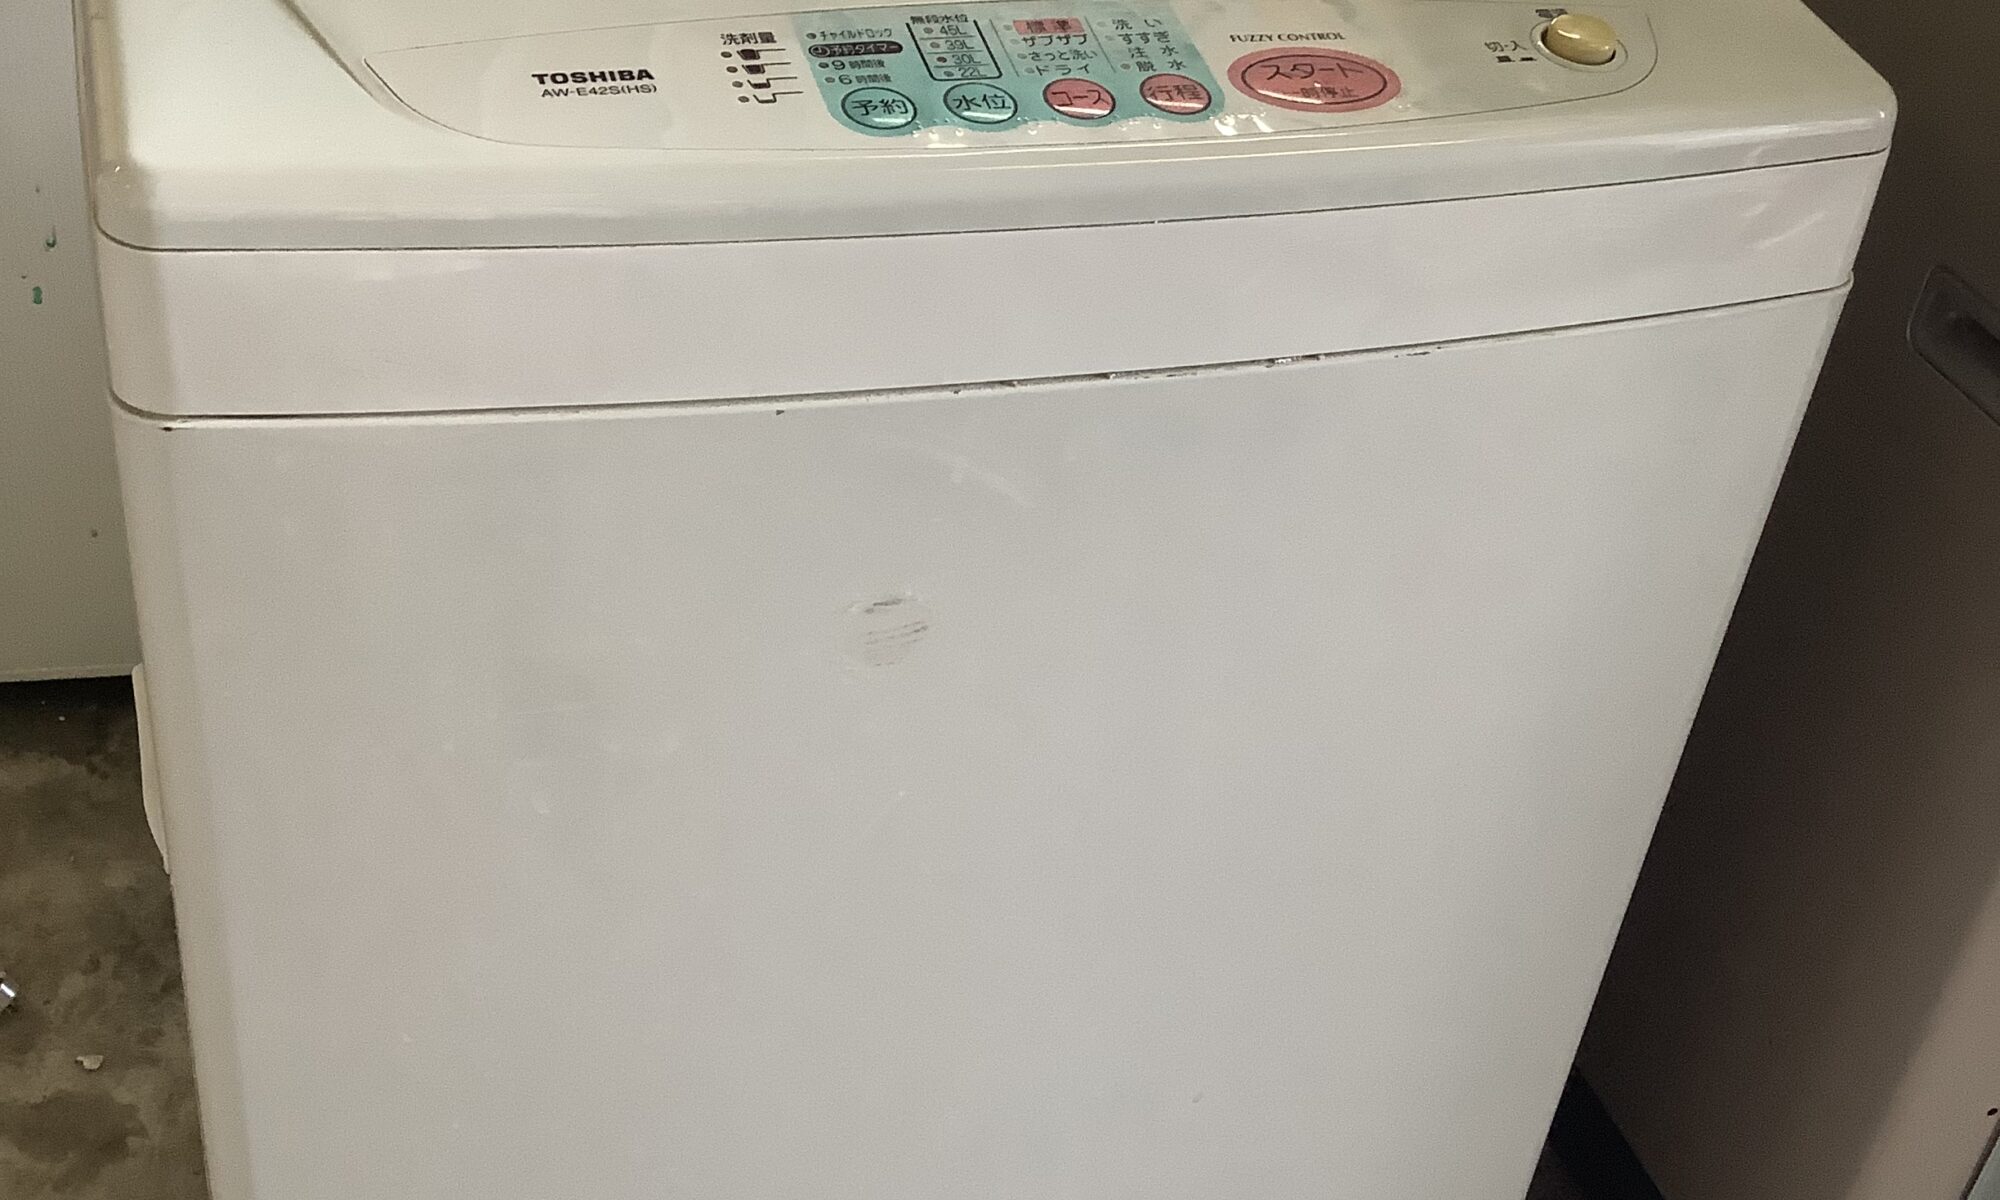 福山市引野町で回収した洗濯機